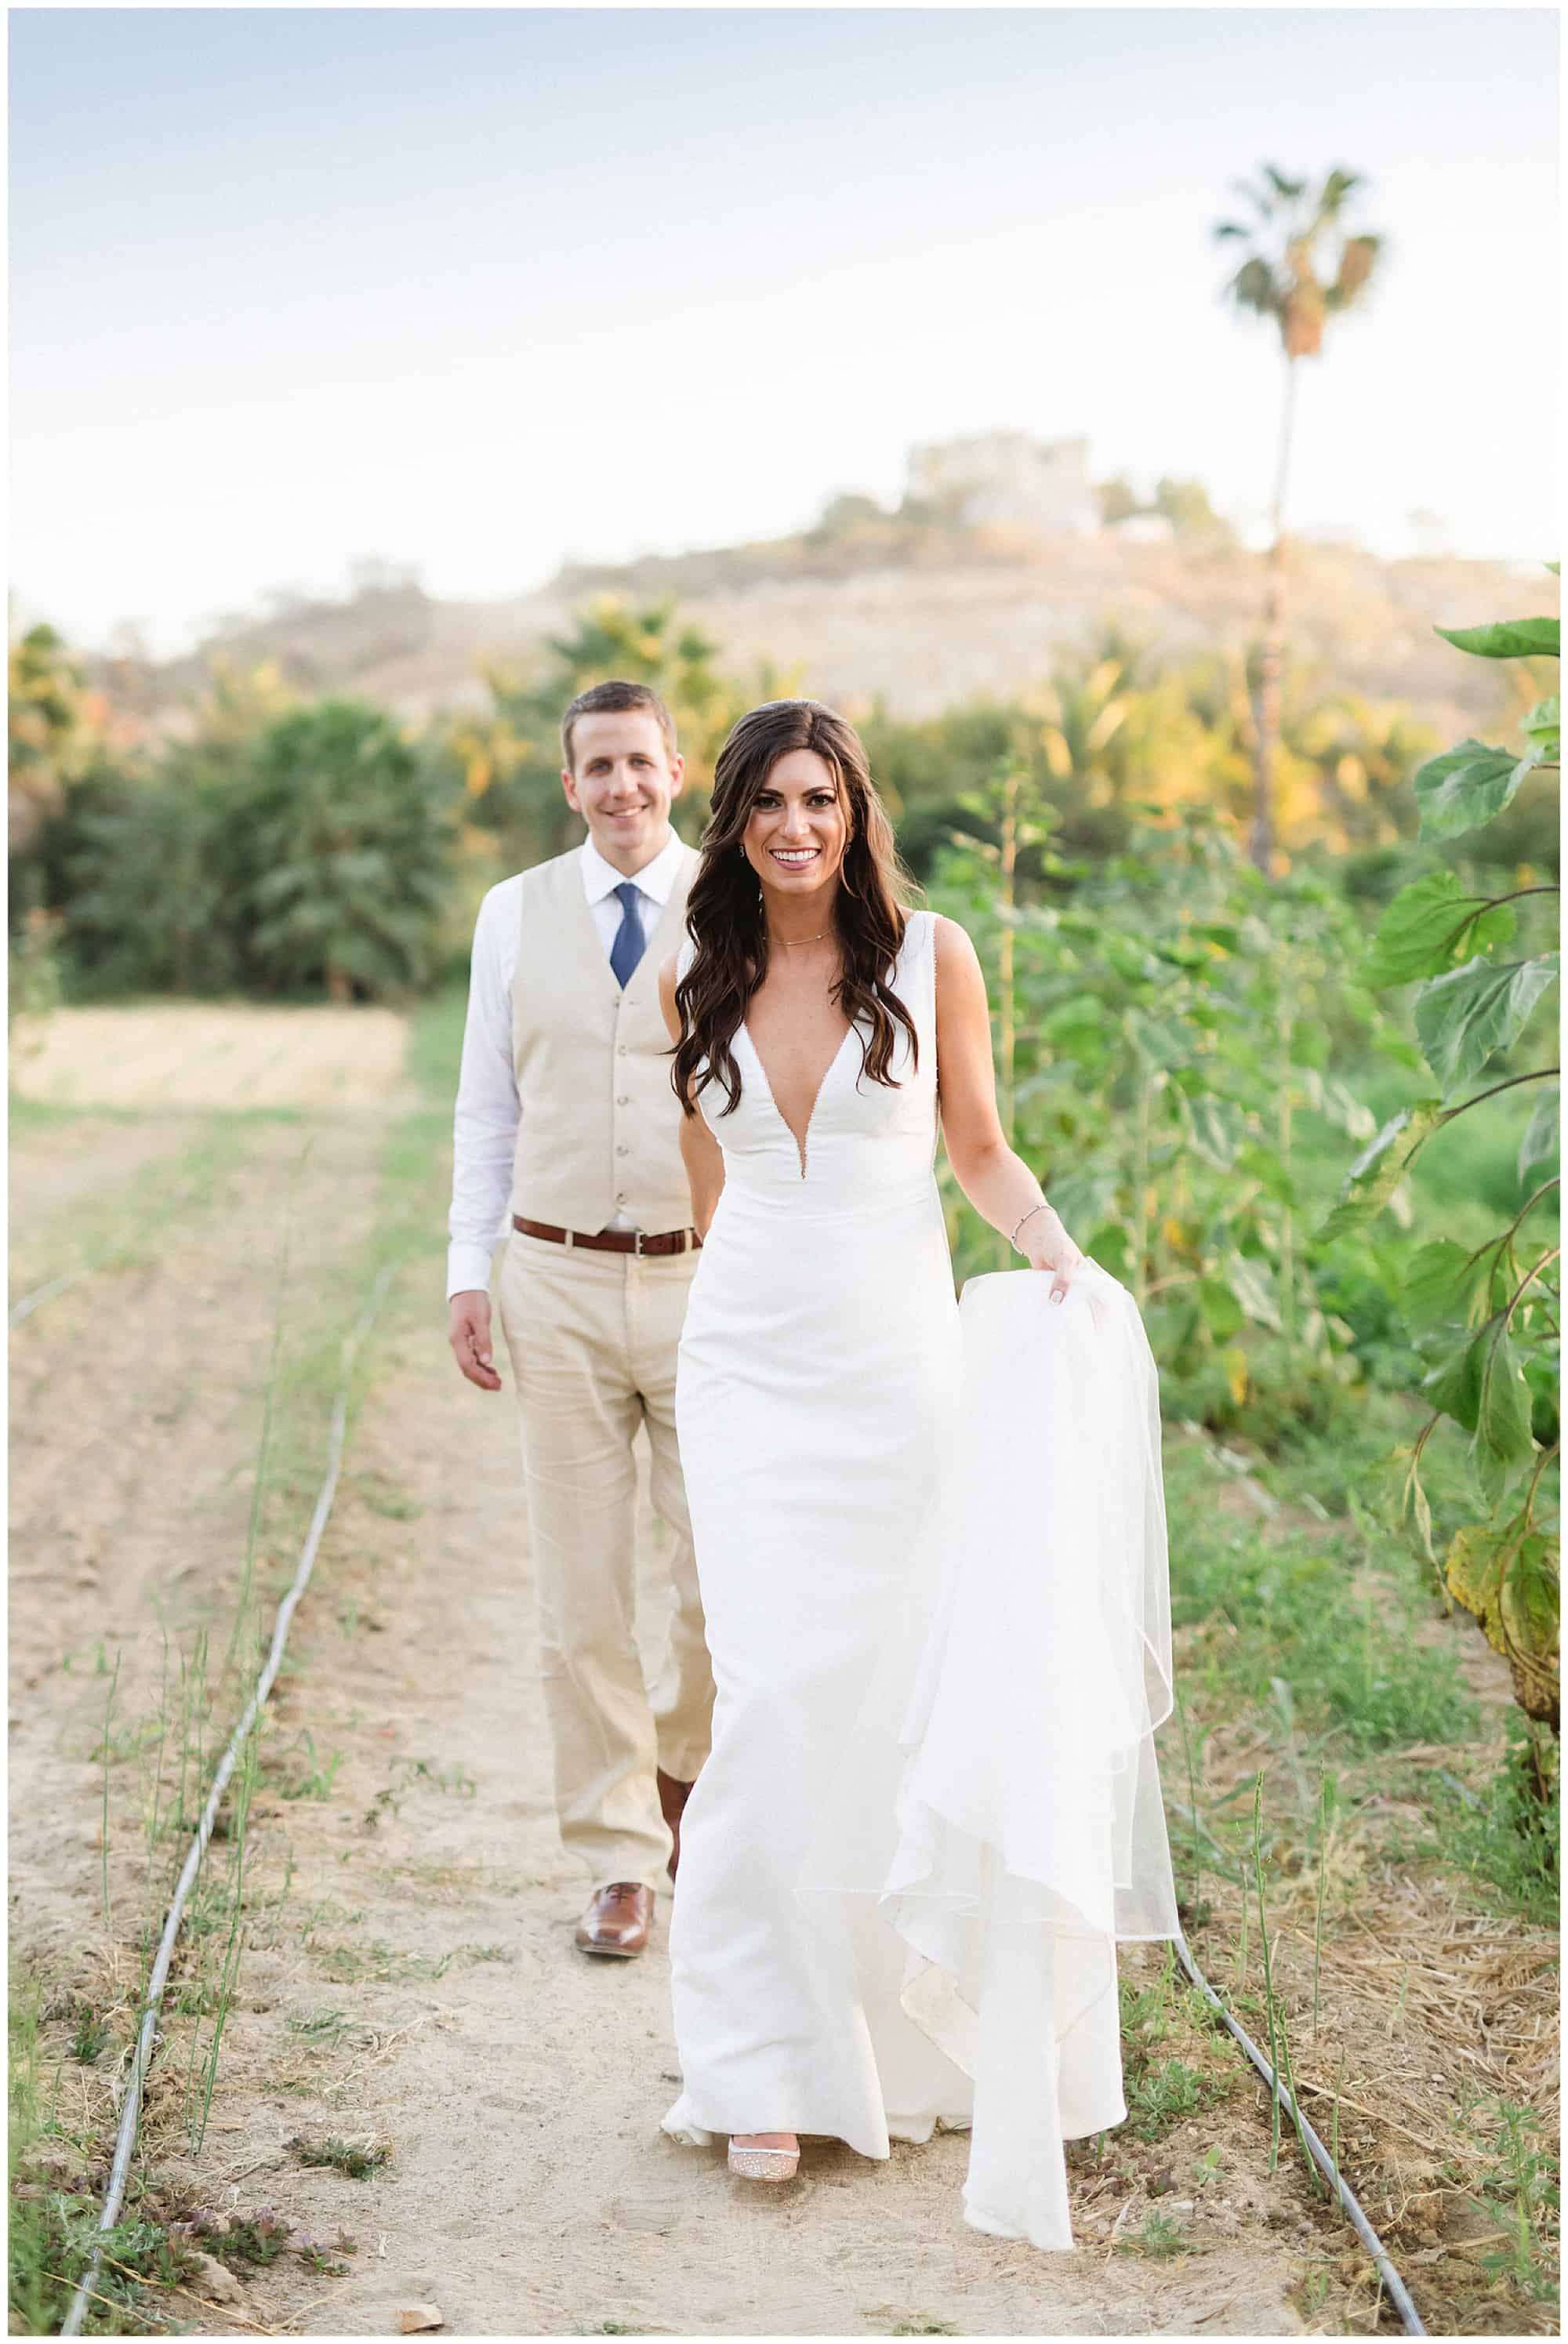 ?pp route=%2Fimage resize&path=nBnauQTMyEzX5hGchJ3ZvR3boBXLu92ckJXYoNWay1SYyF2ctIXZoBXYyd2b09Gaw1yZulGZkV2dt8mYhN2L0N3bw1iM0kzNtATMvgDMvkTMwIjf&width=768 - Spectacular Flora Farms Wedding - Haley & Kyle